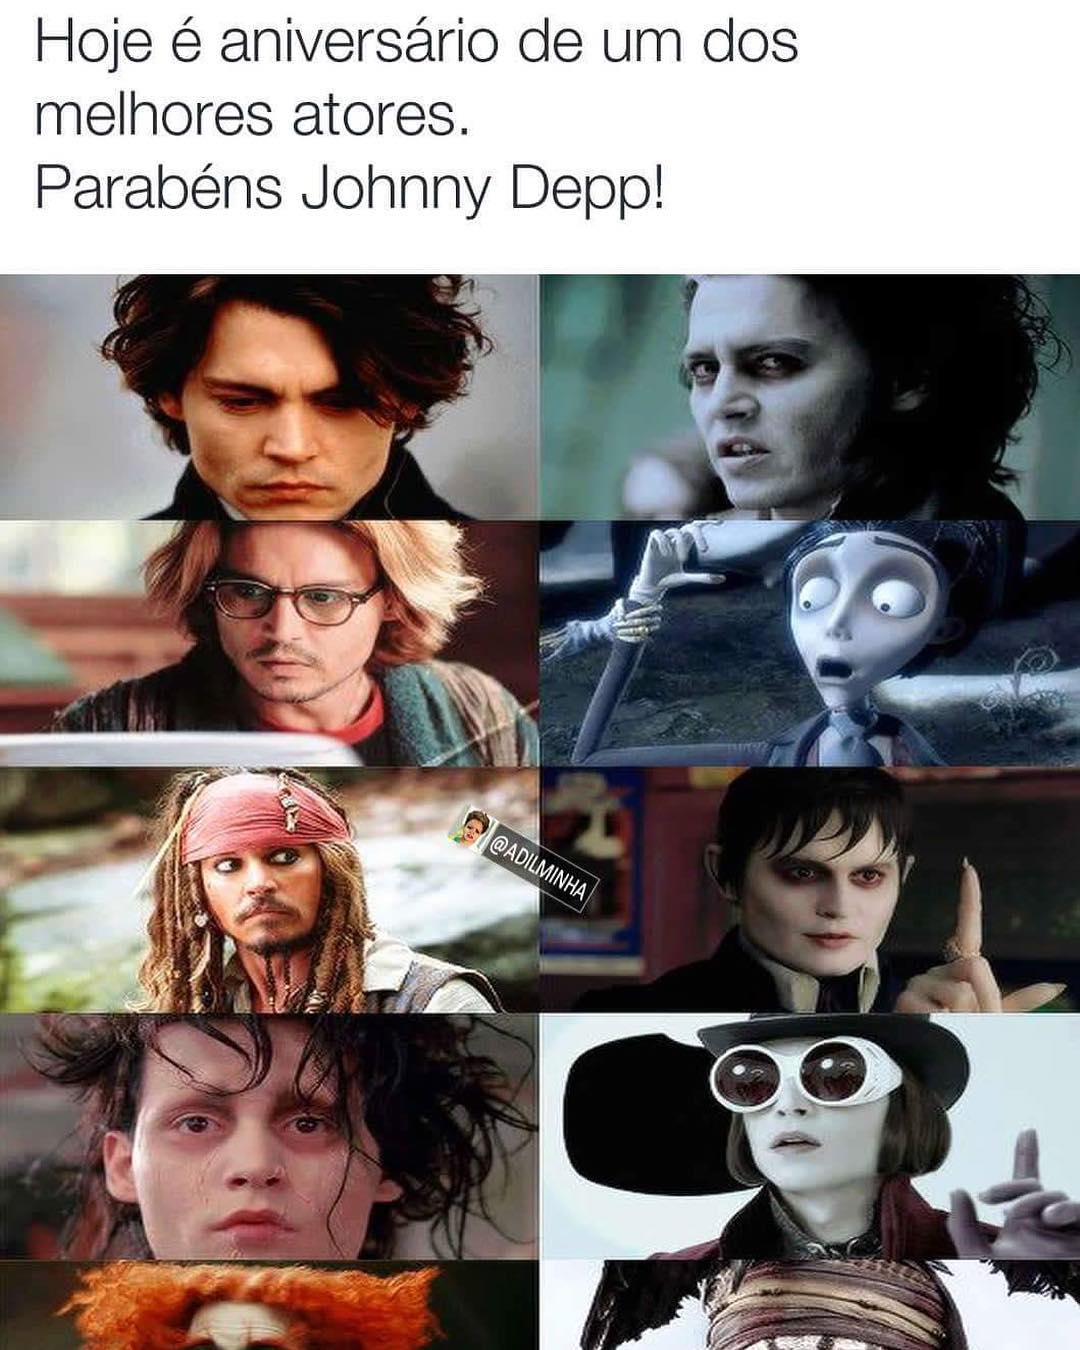 Hoje é aniversário de um dos melhores atores. Parabéns Johnny Depp!